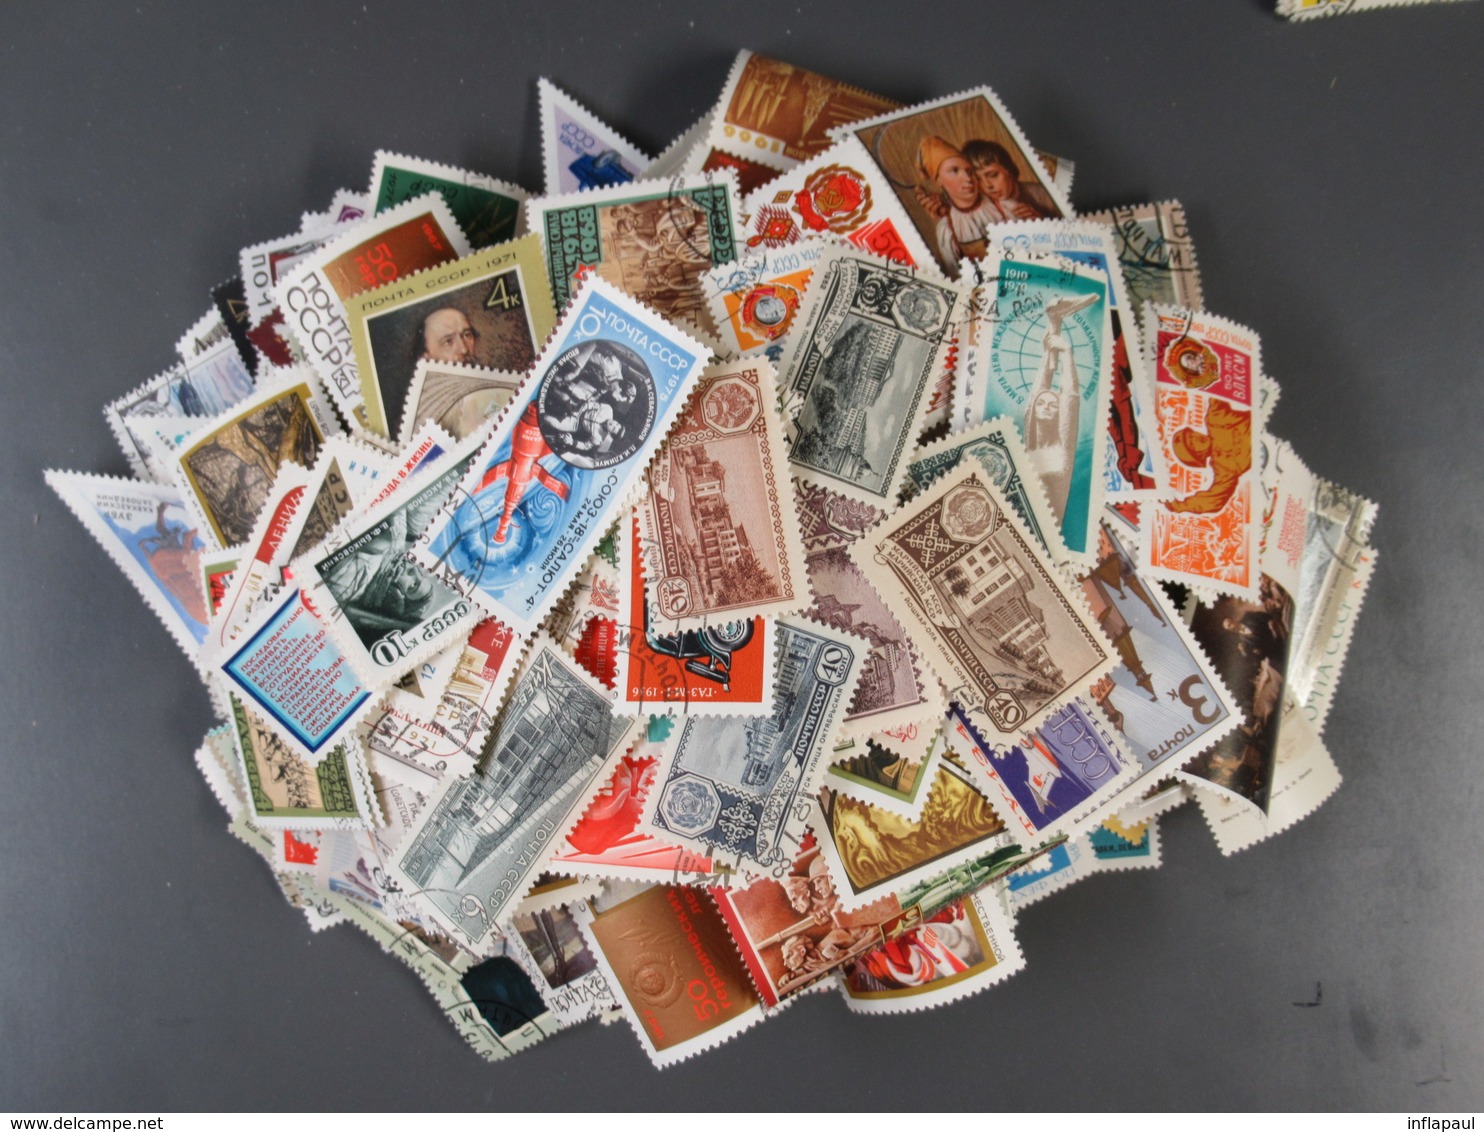 1000 verschiedene Briefmarken Sowjetunion und 50 Blöcke gestemepelt